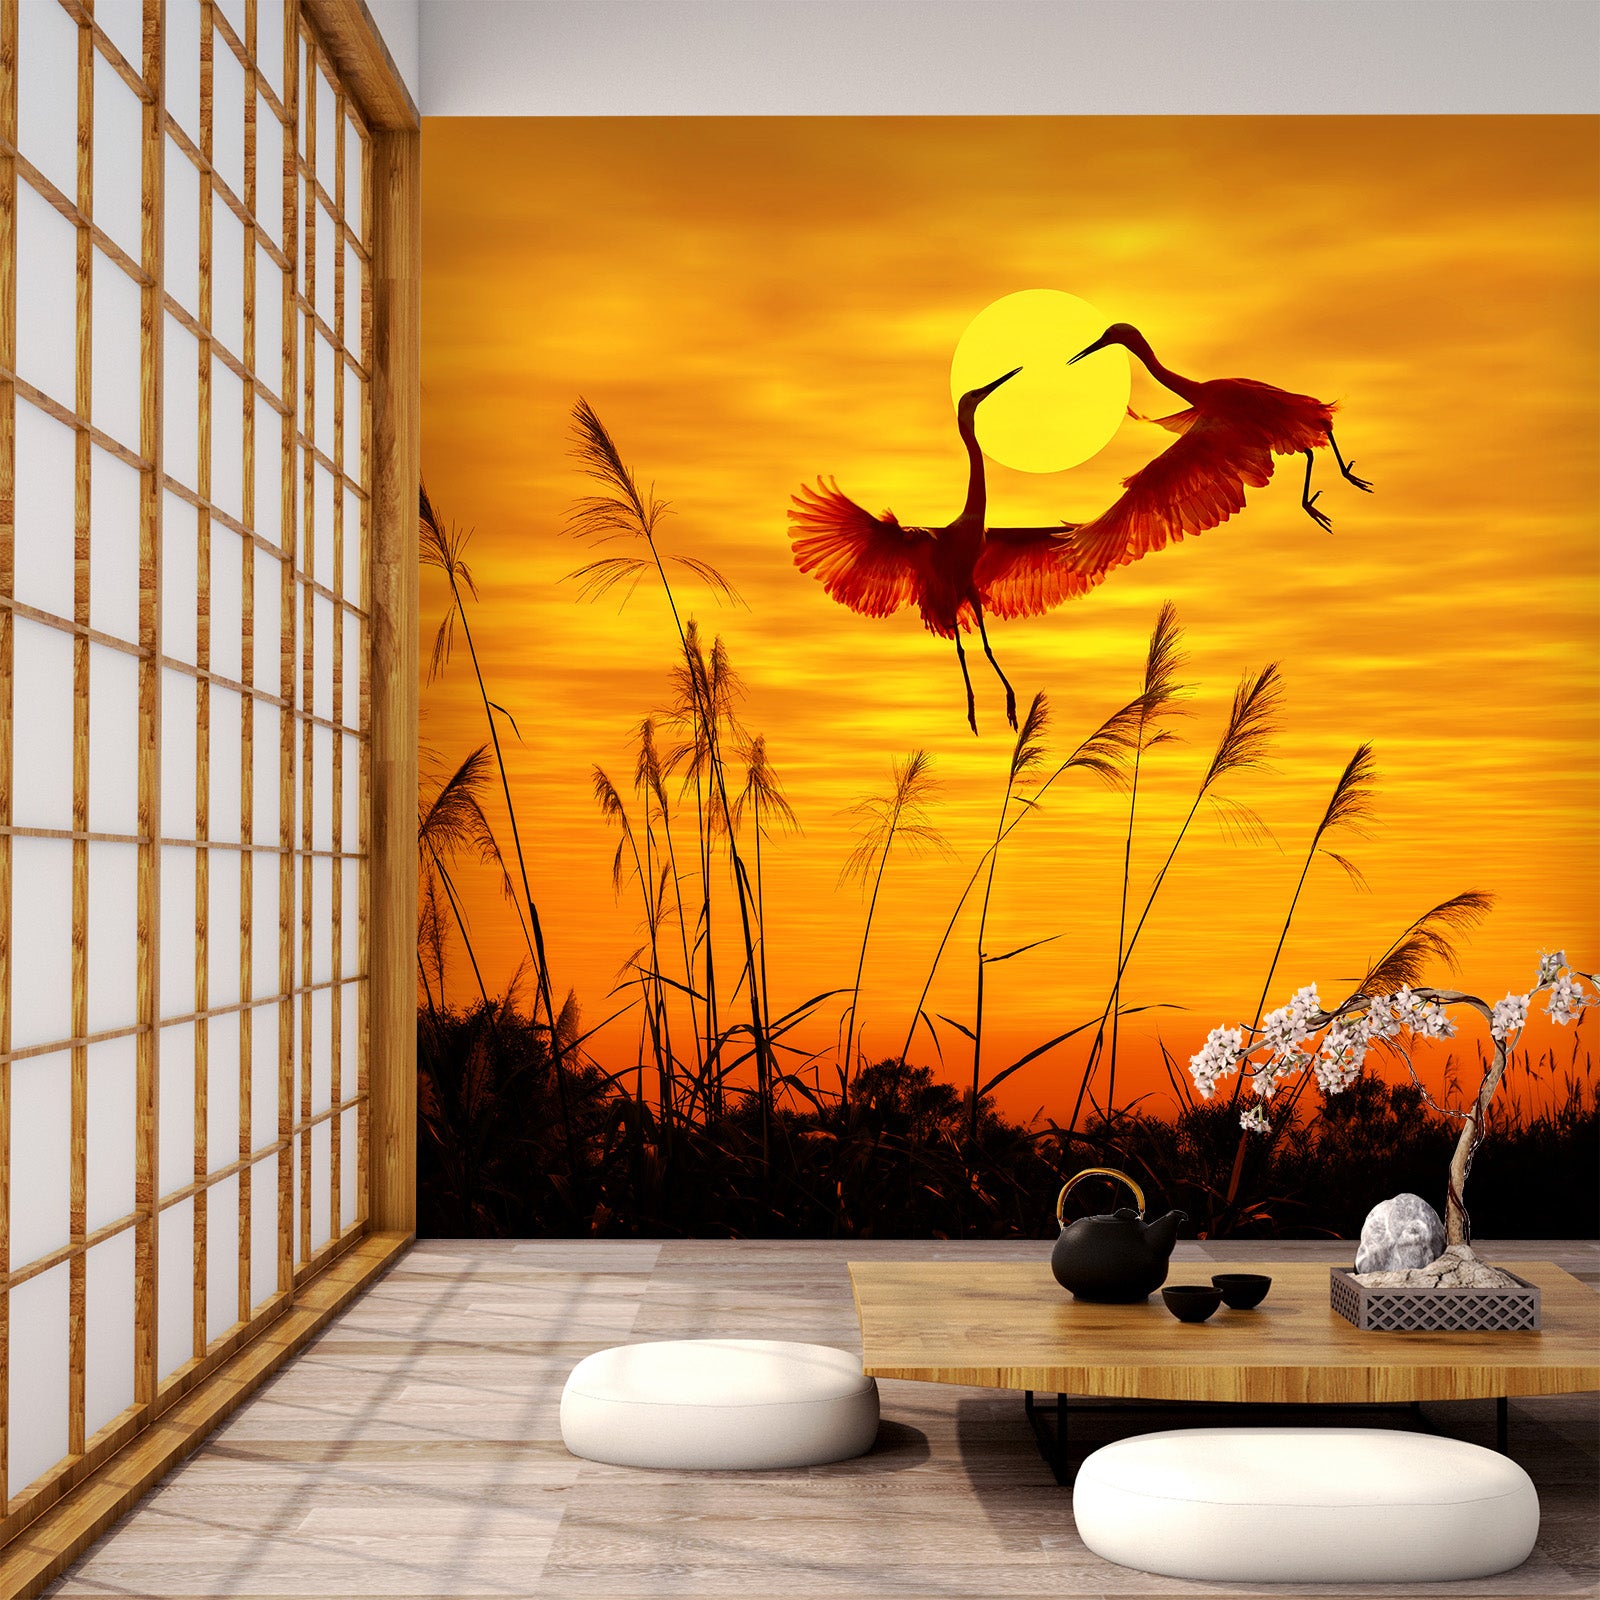 3D Sunset Crane 402 Wall Murals